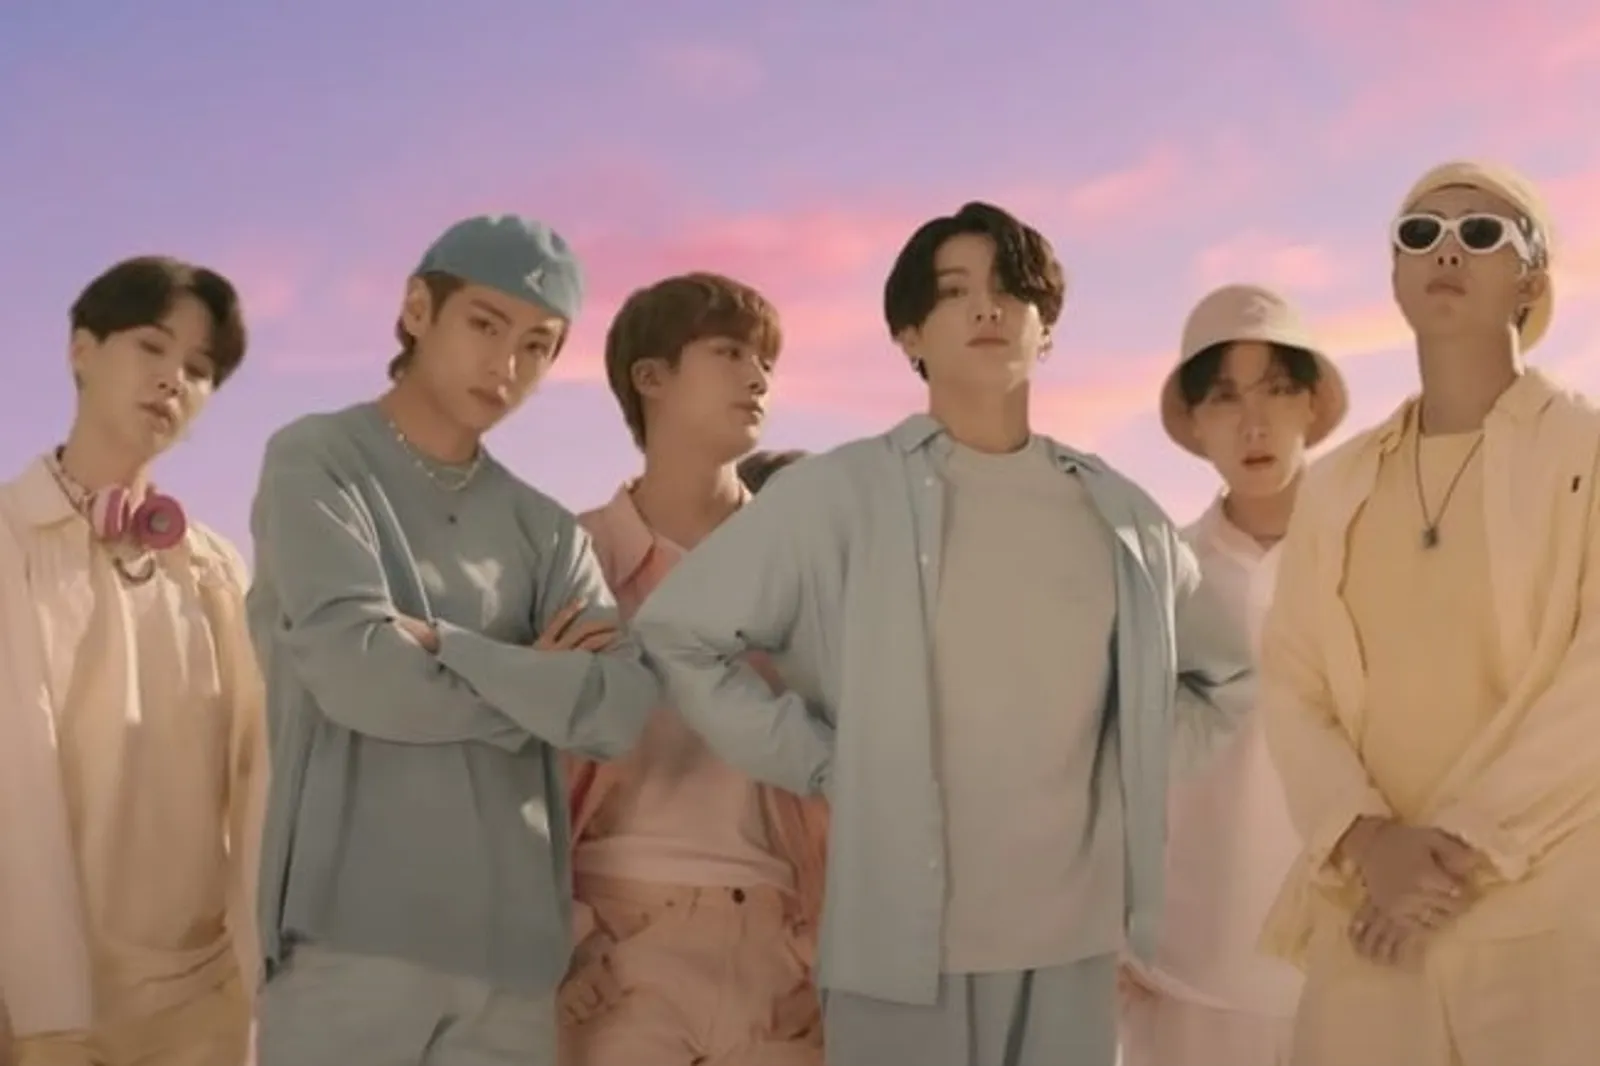 BTS Melelang Pakaian Pastel di Video Klip Dynamite Seharga Miliaran!